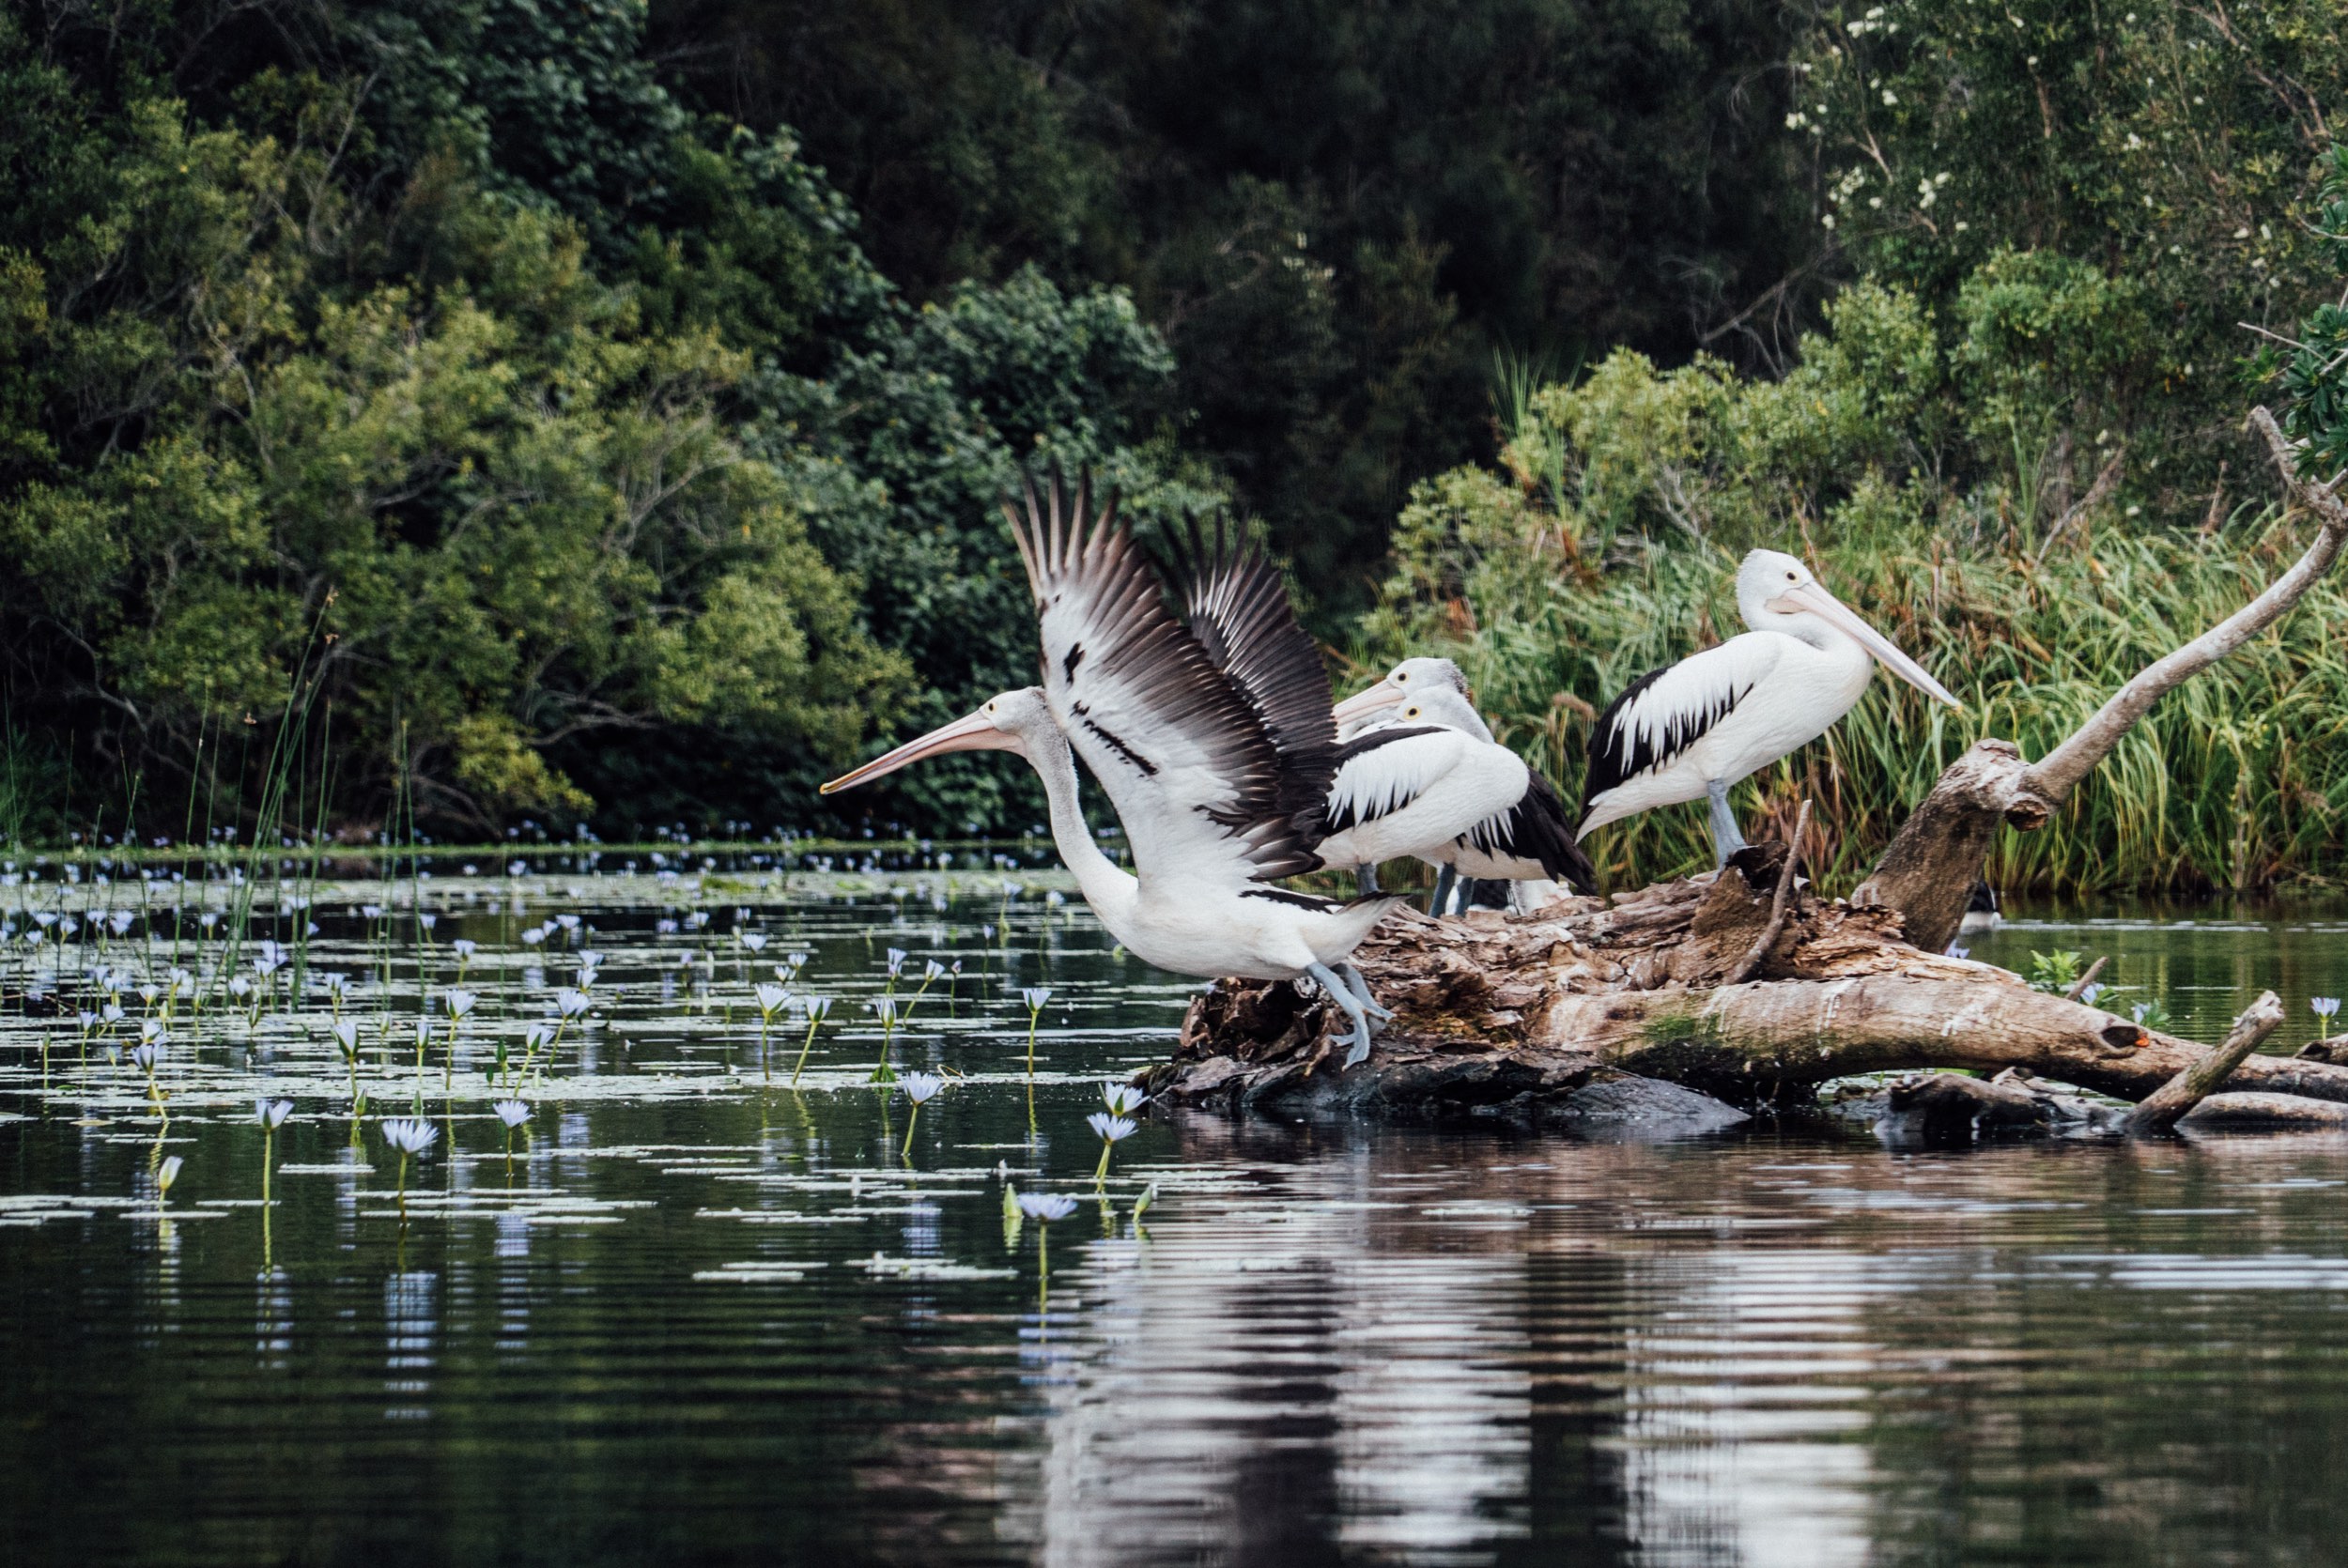 A Pelican taking flight 